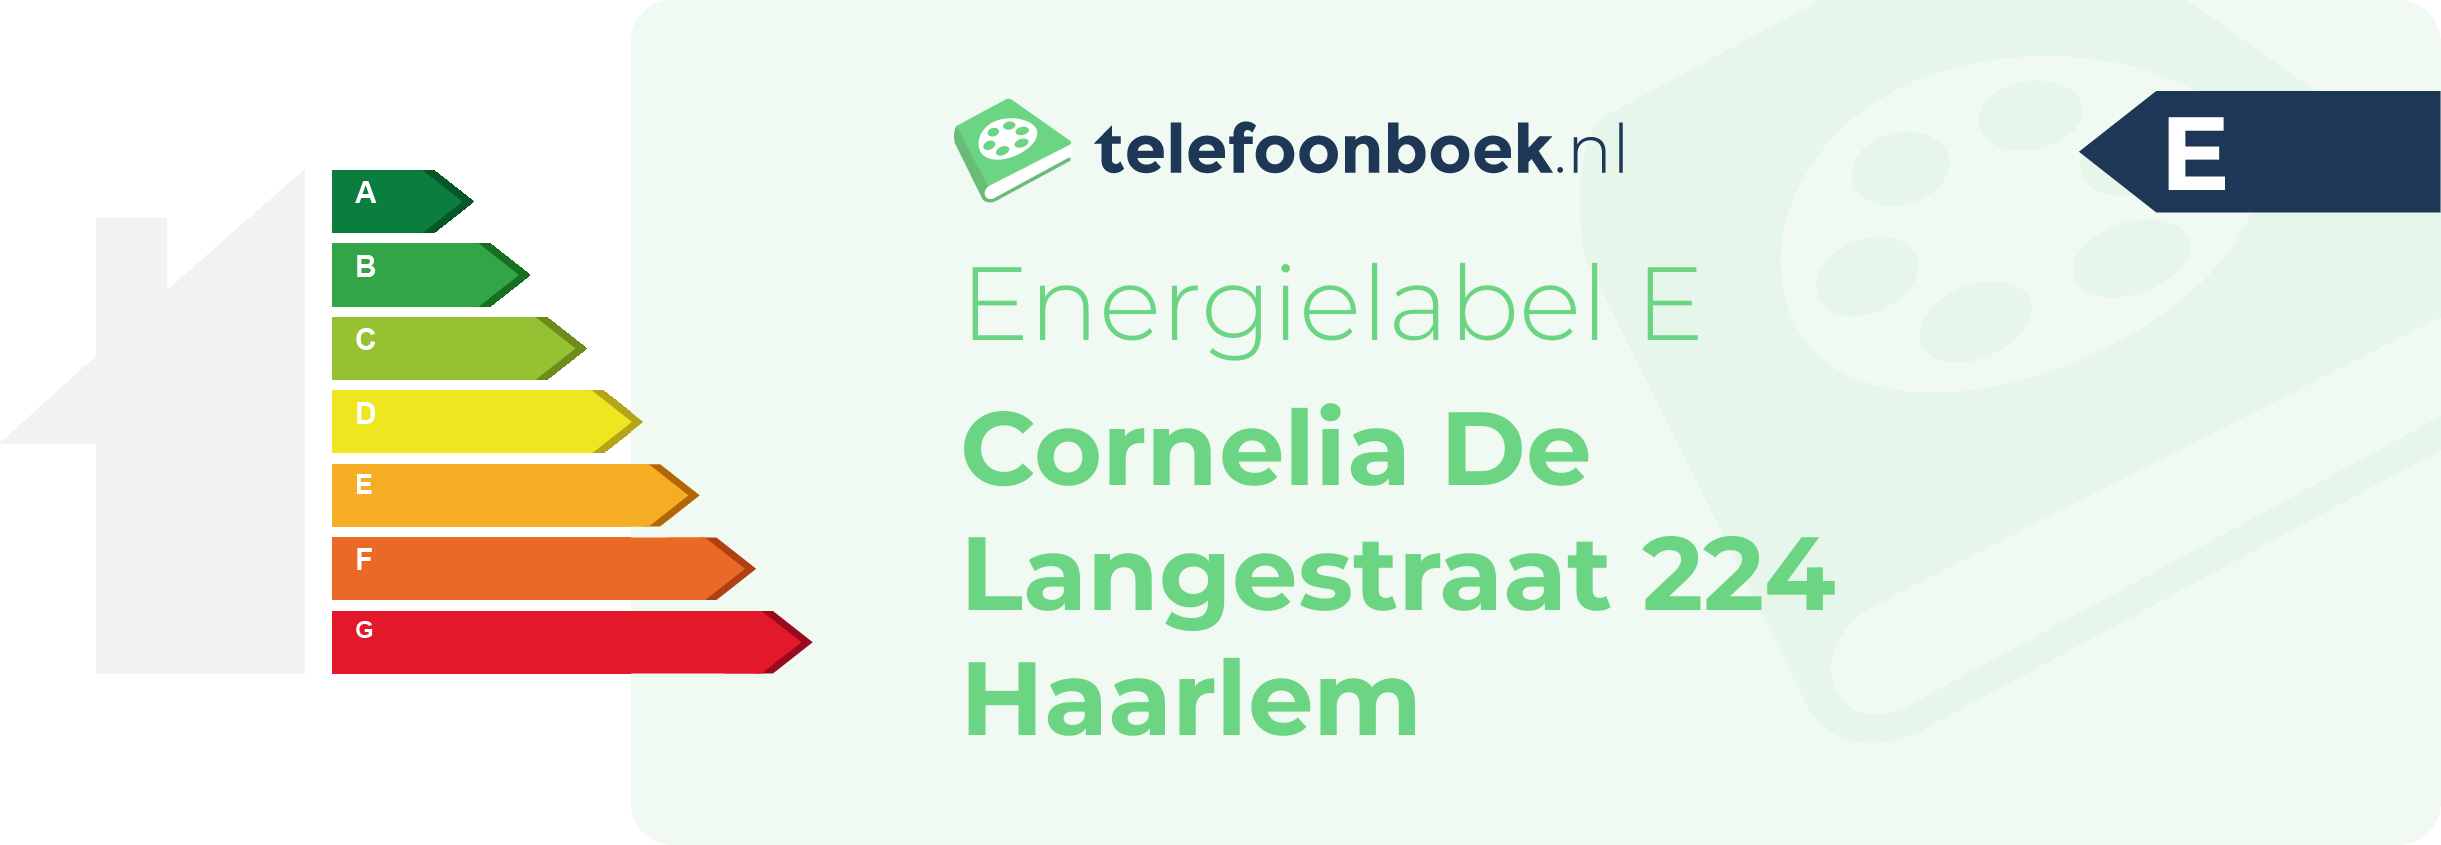 Energielabel Cornelia De Langestraat 224 Haarlem